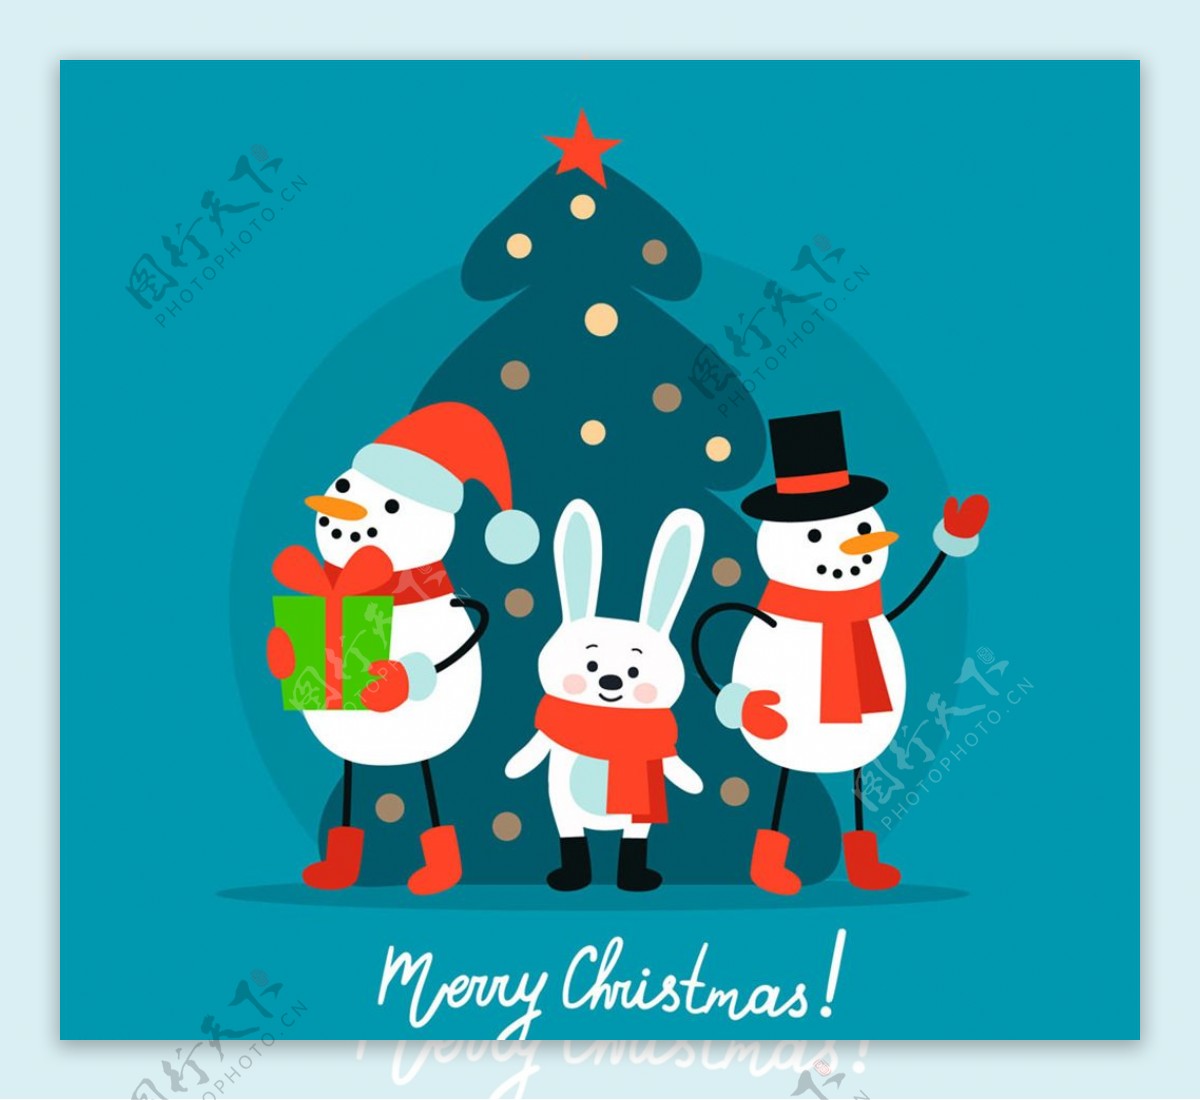 可爱圣诞雪人和兔子矢量素材